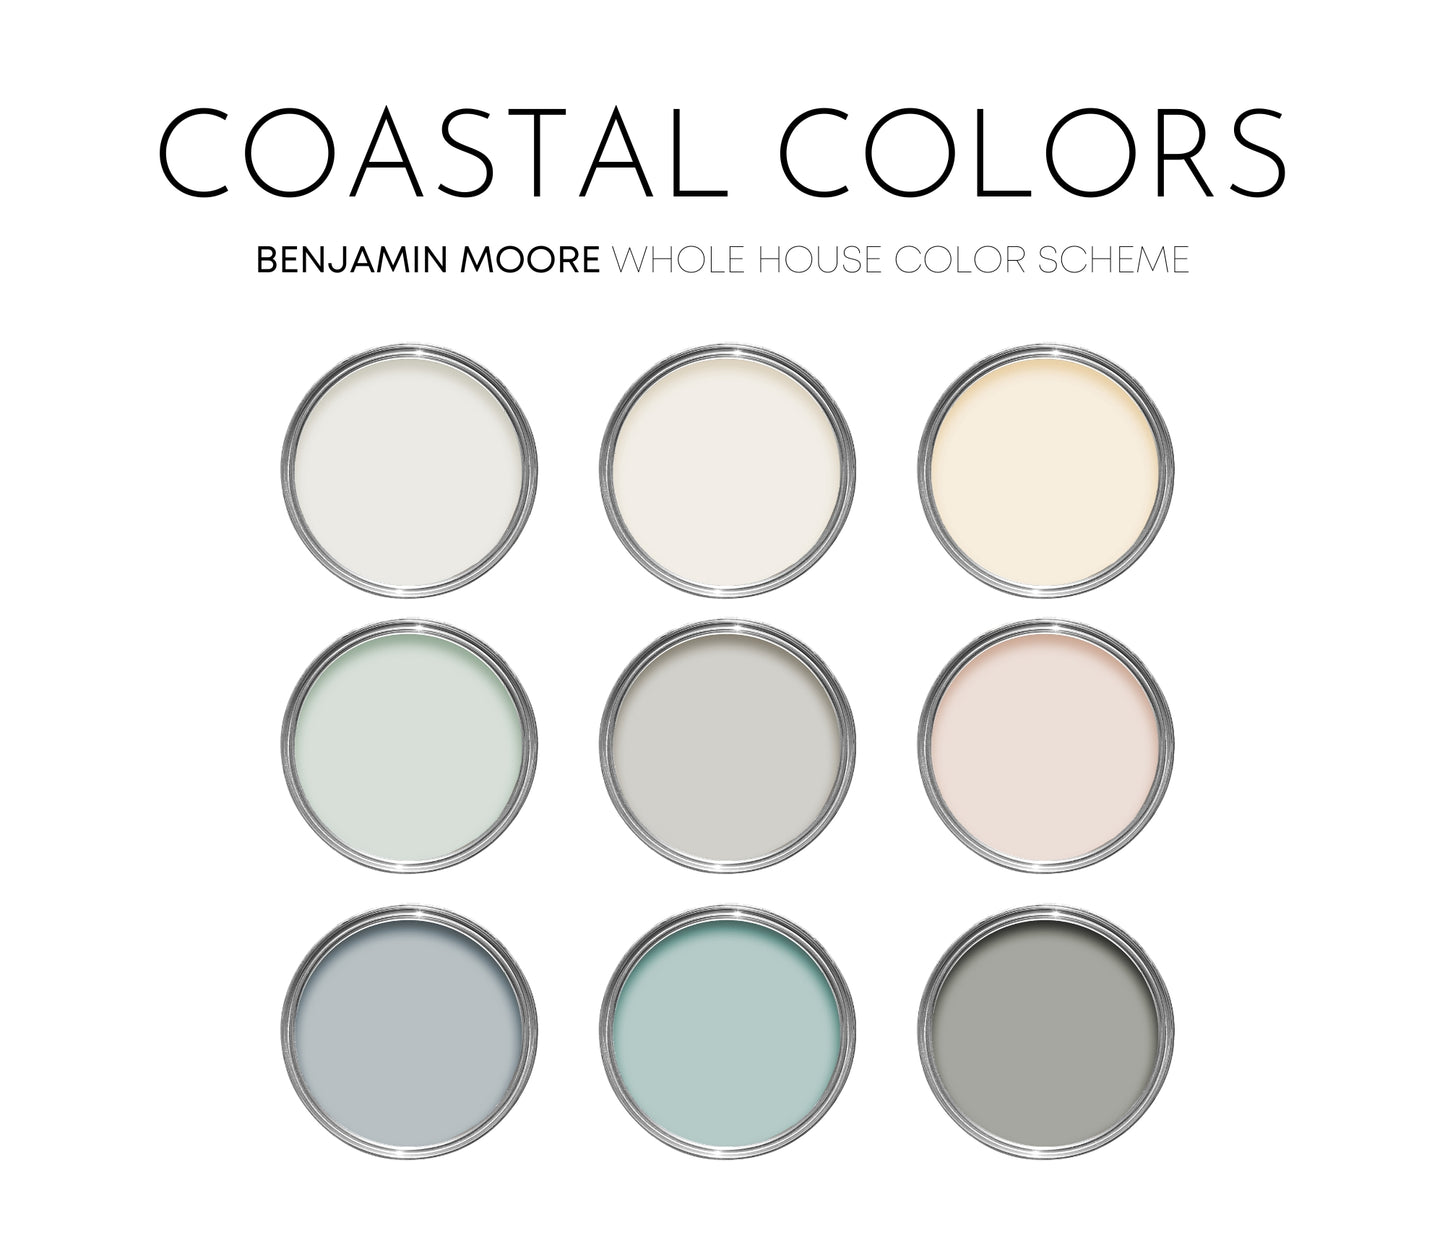 Coastal Colors Benjamin Moore Paint Palette, Interior Paint Colors for Home, Cottage Colors, Coastal Colors, Blue